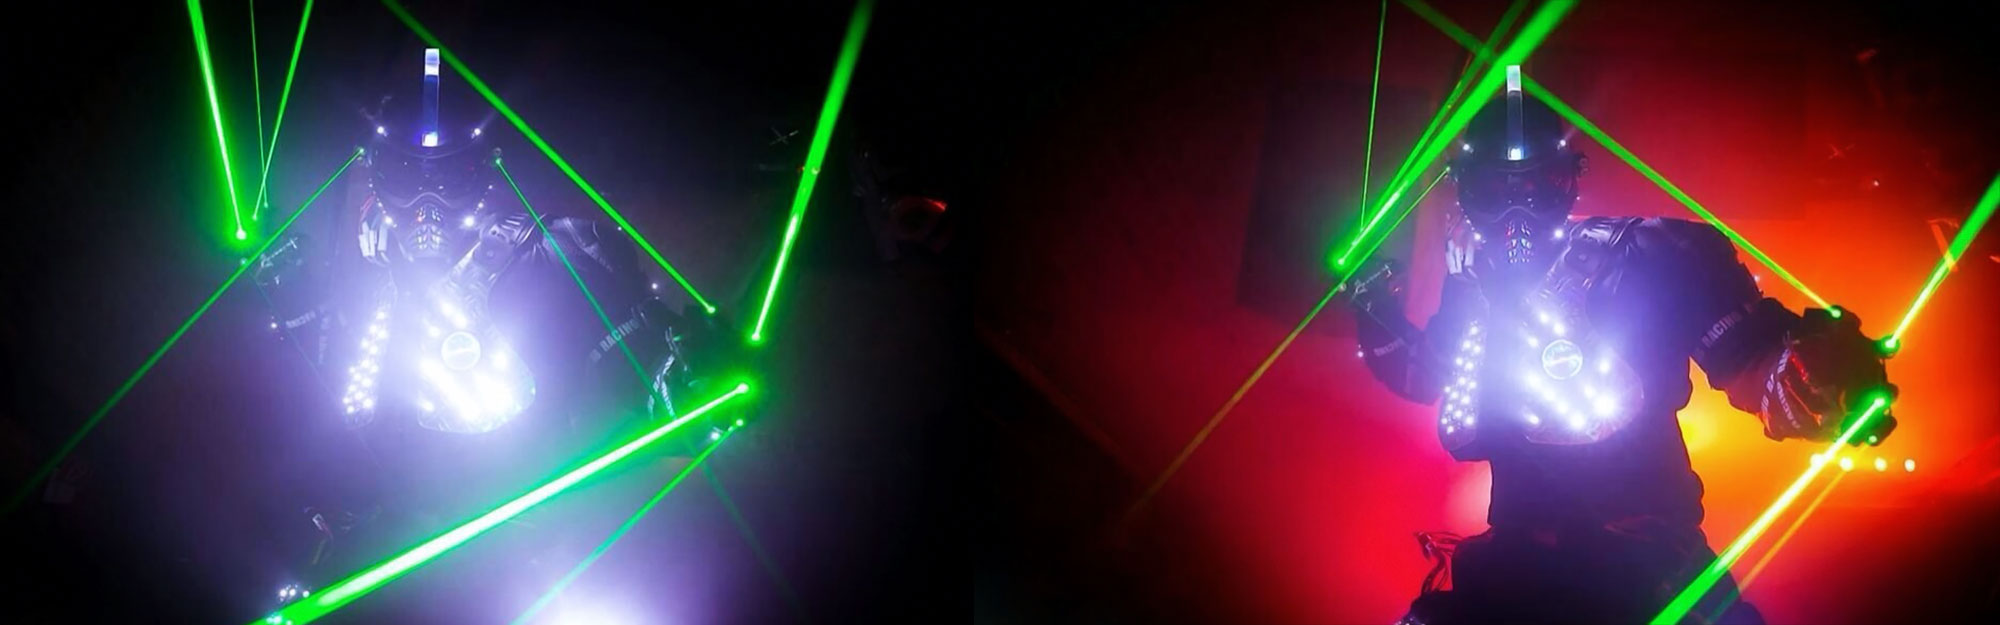 Roboter Lasershow mit Laserboyz und Lasergirlz